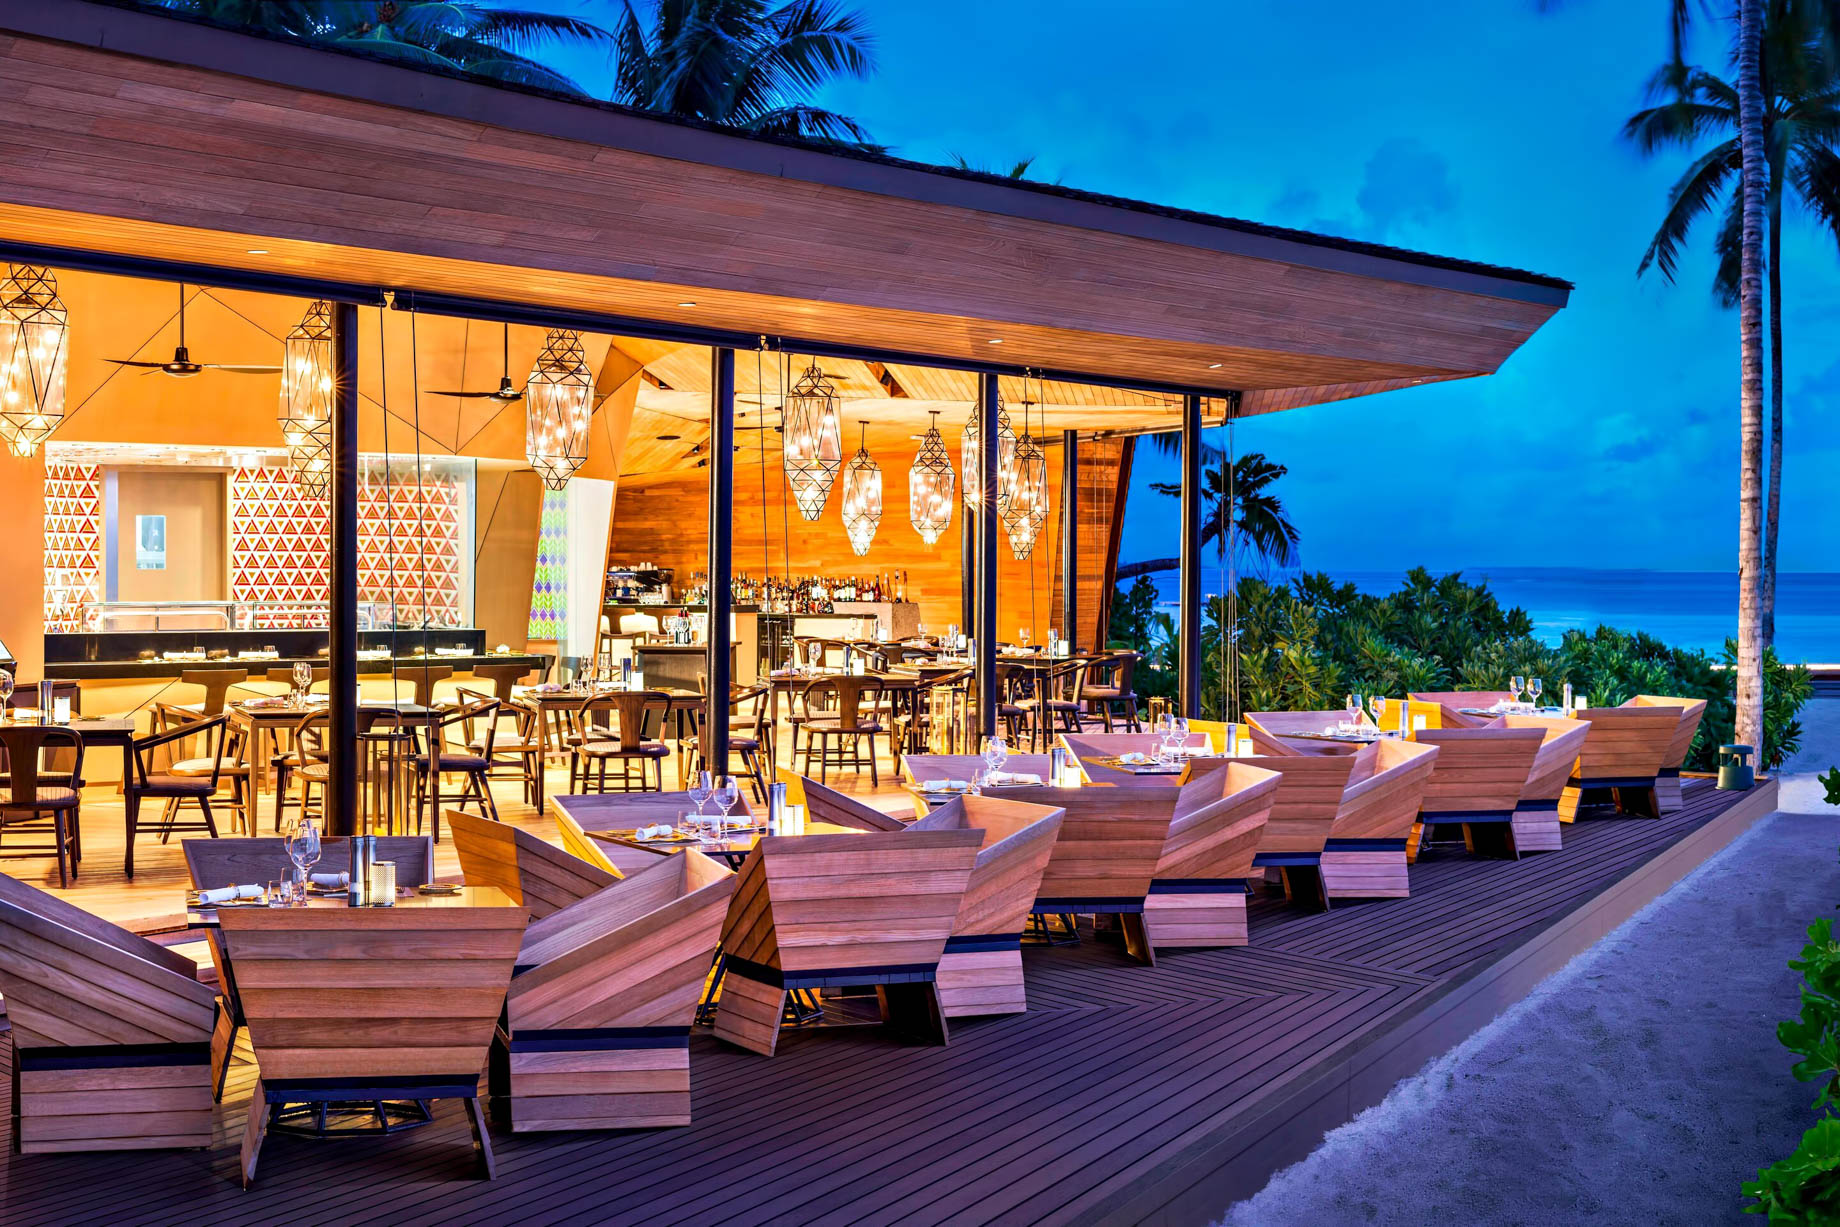 The St. Regis Maldives Vommuli Resort - Dhaalu Atoll, Maldives - Orientale Restaurant Exterior